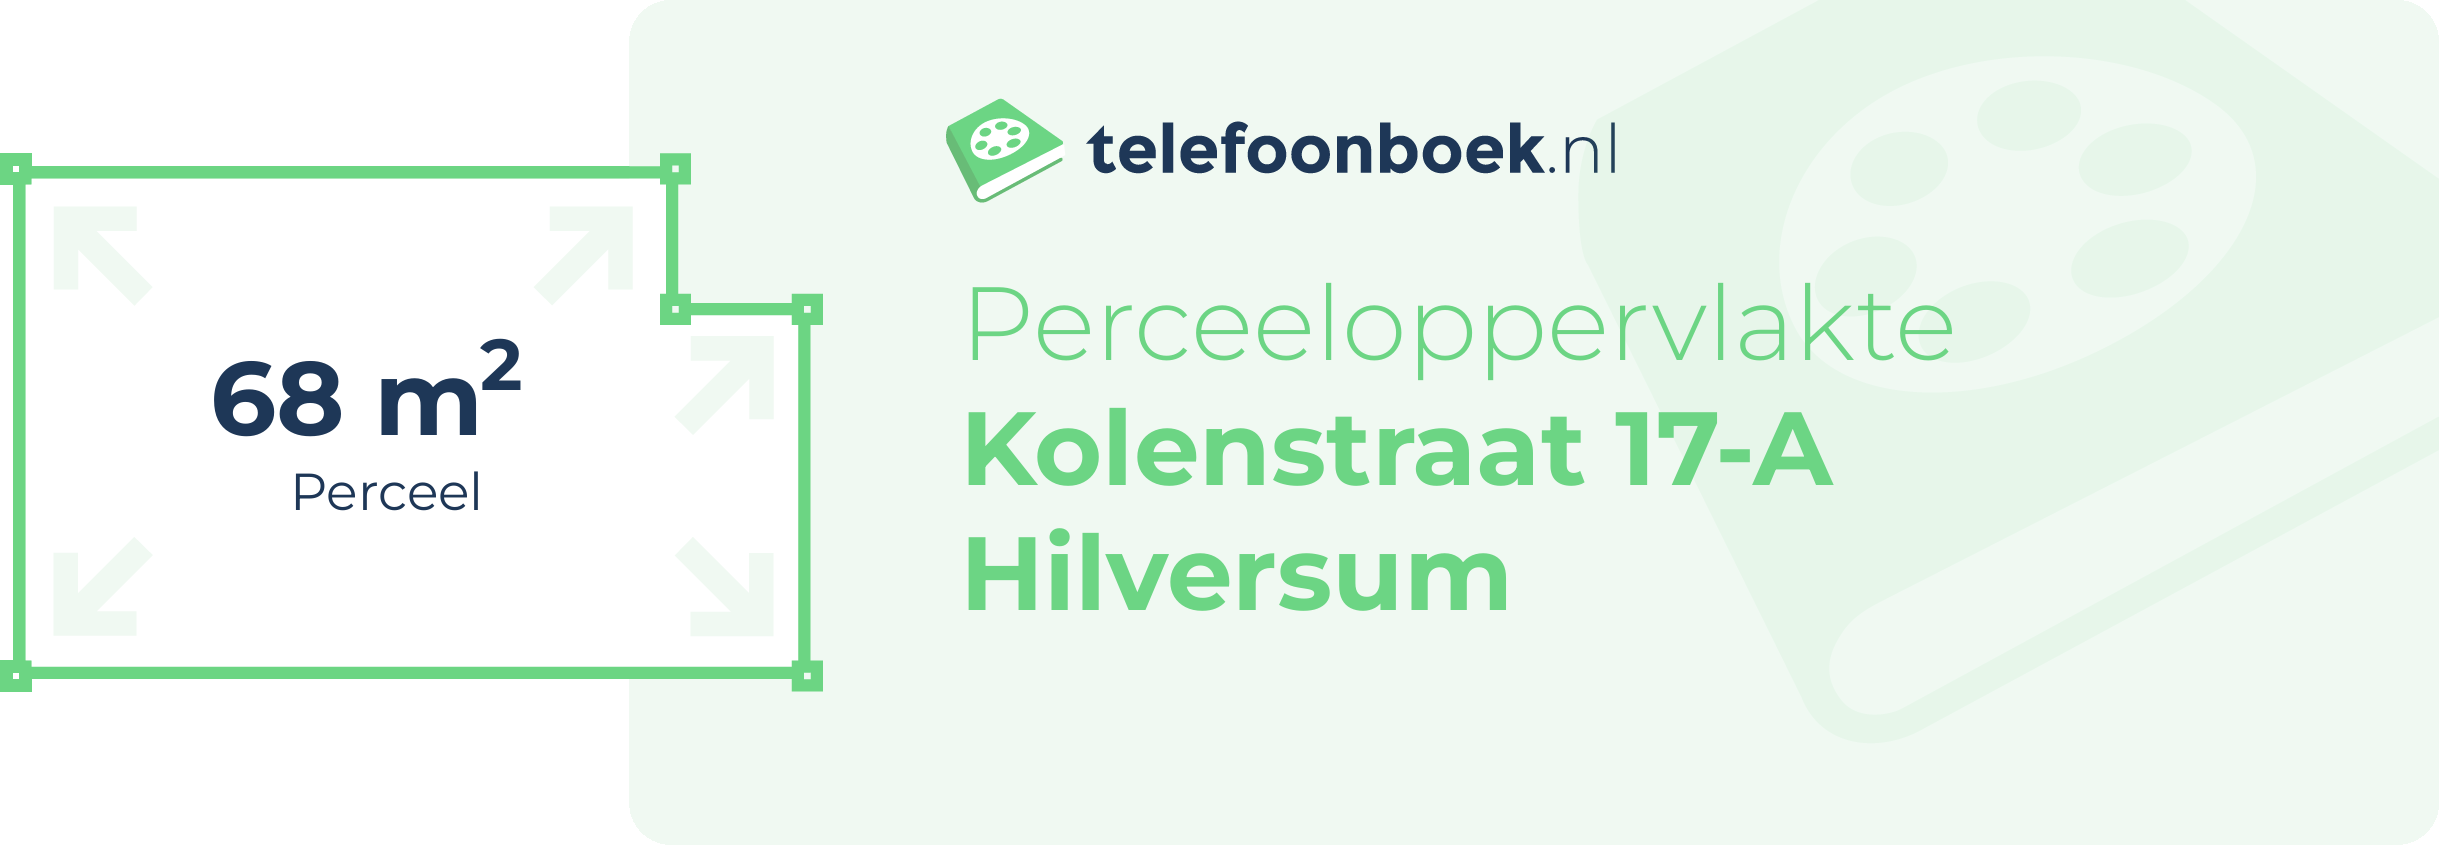 Perceeloppervlakte Kolenstraat 17-A Hilversum